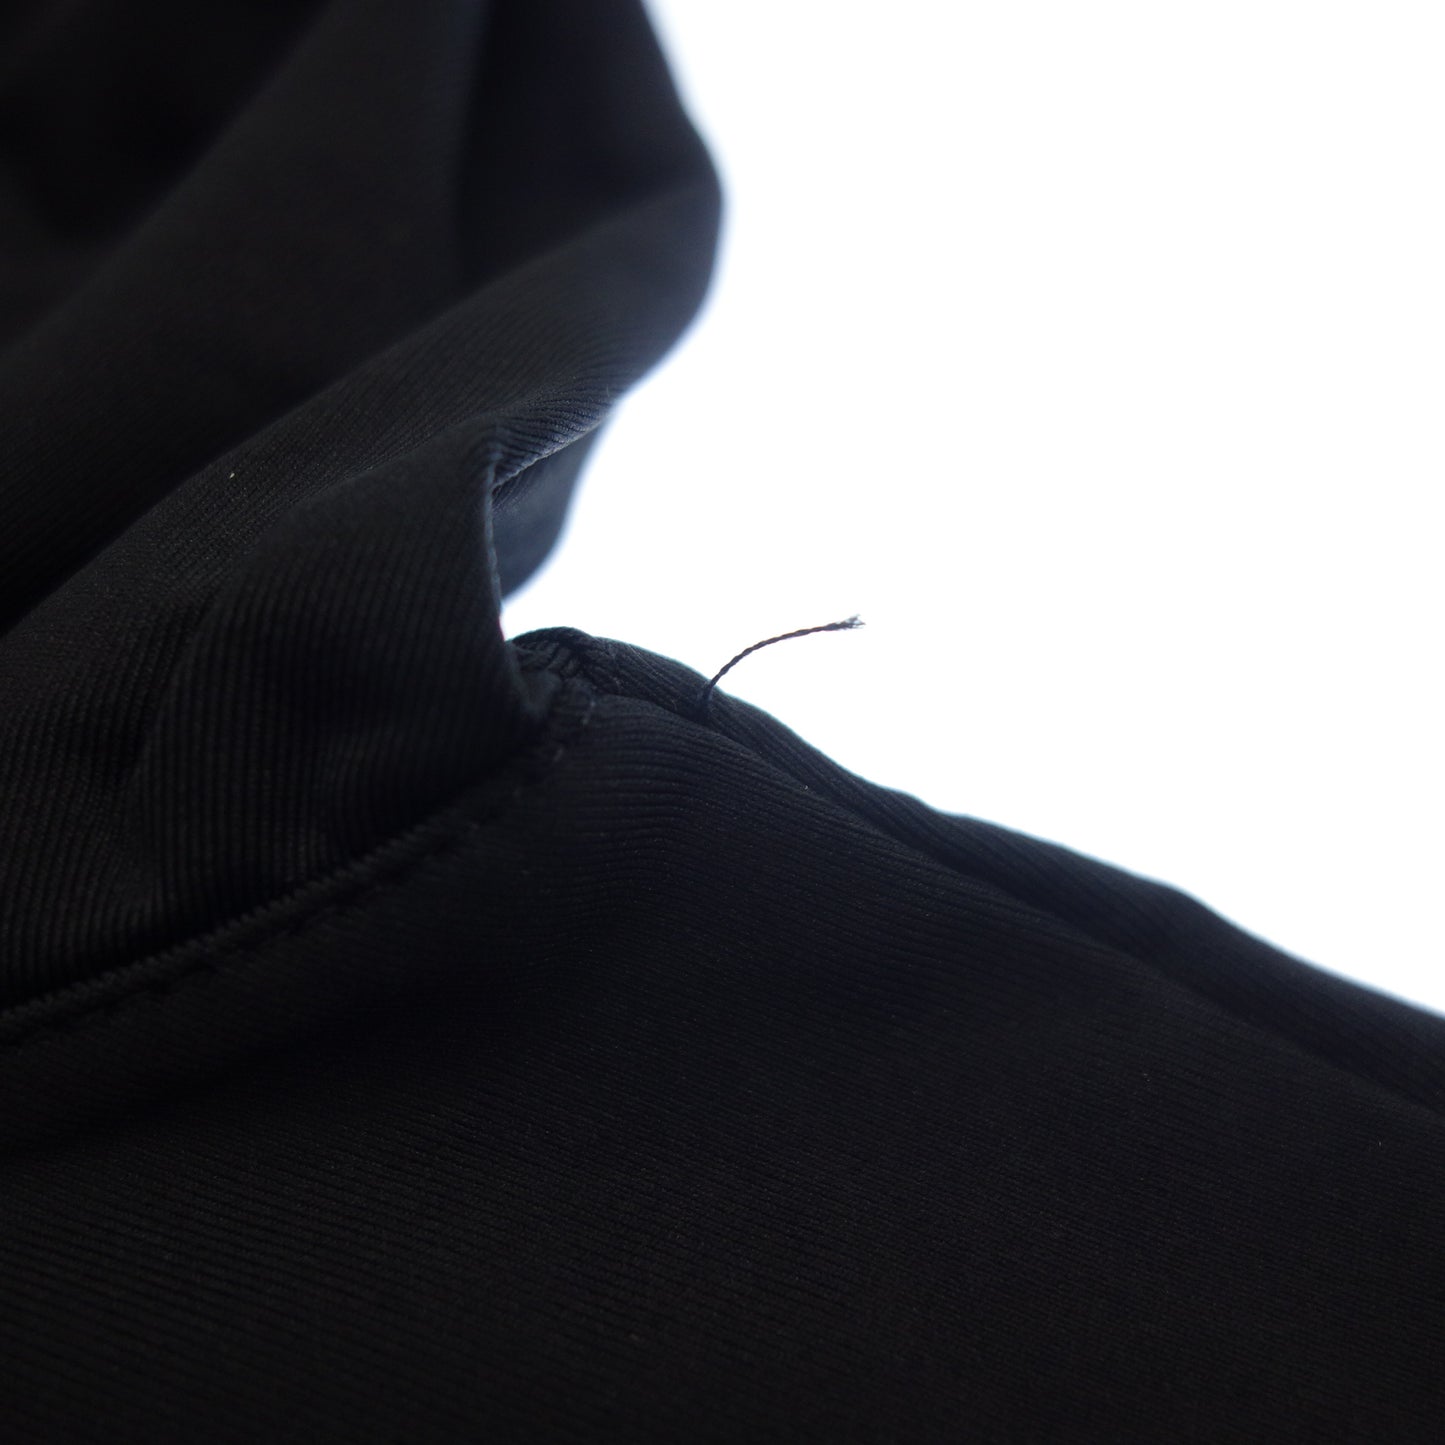 Good condition◆Prada T-shirt Stretch material V-neck Men's Black Size L PRADA [AFB30] 